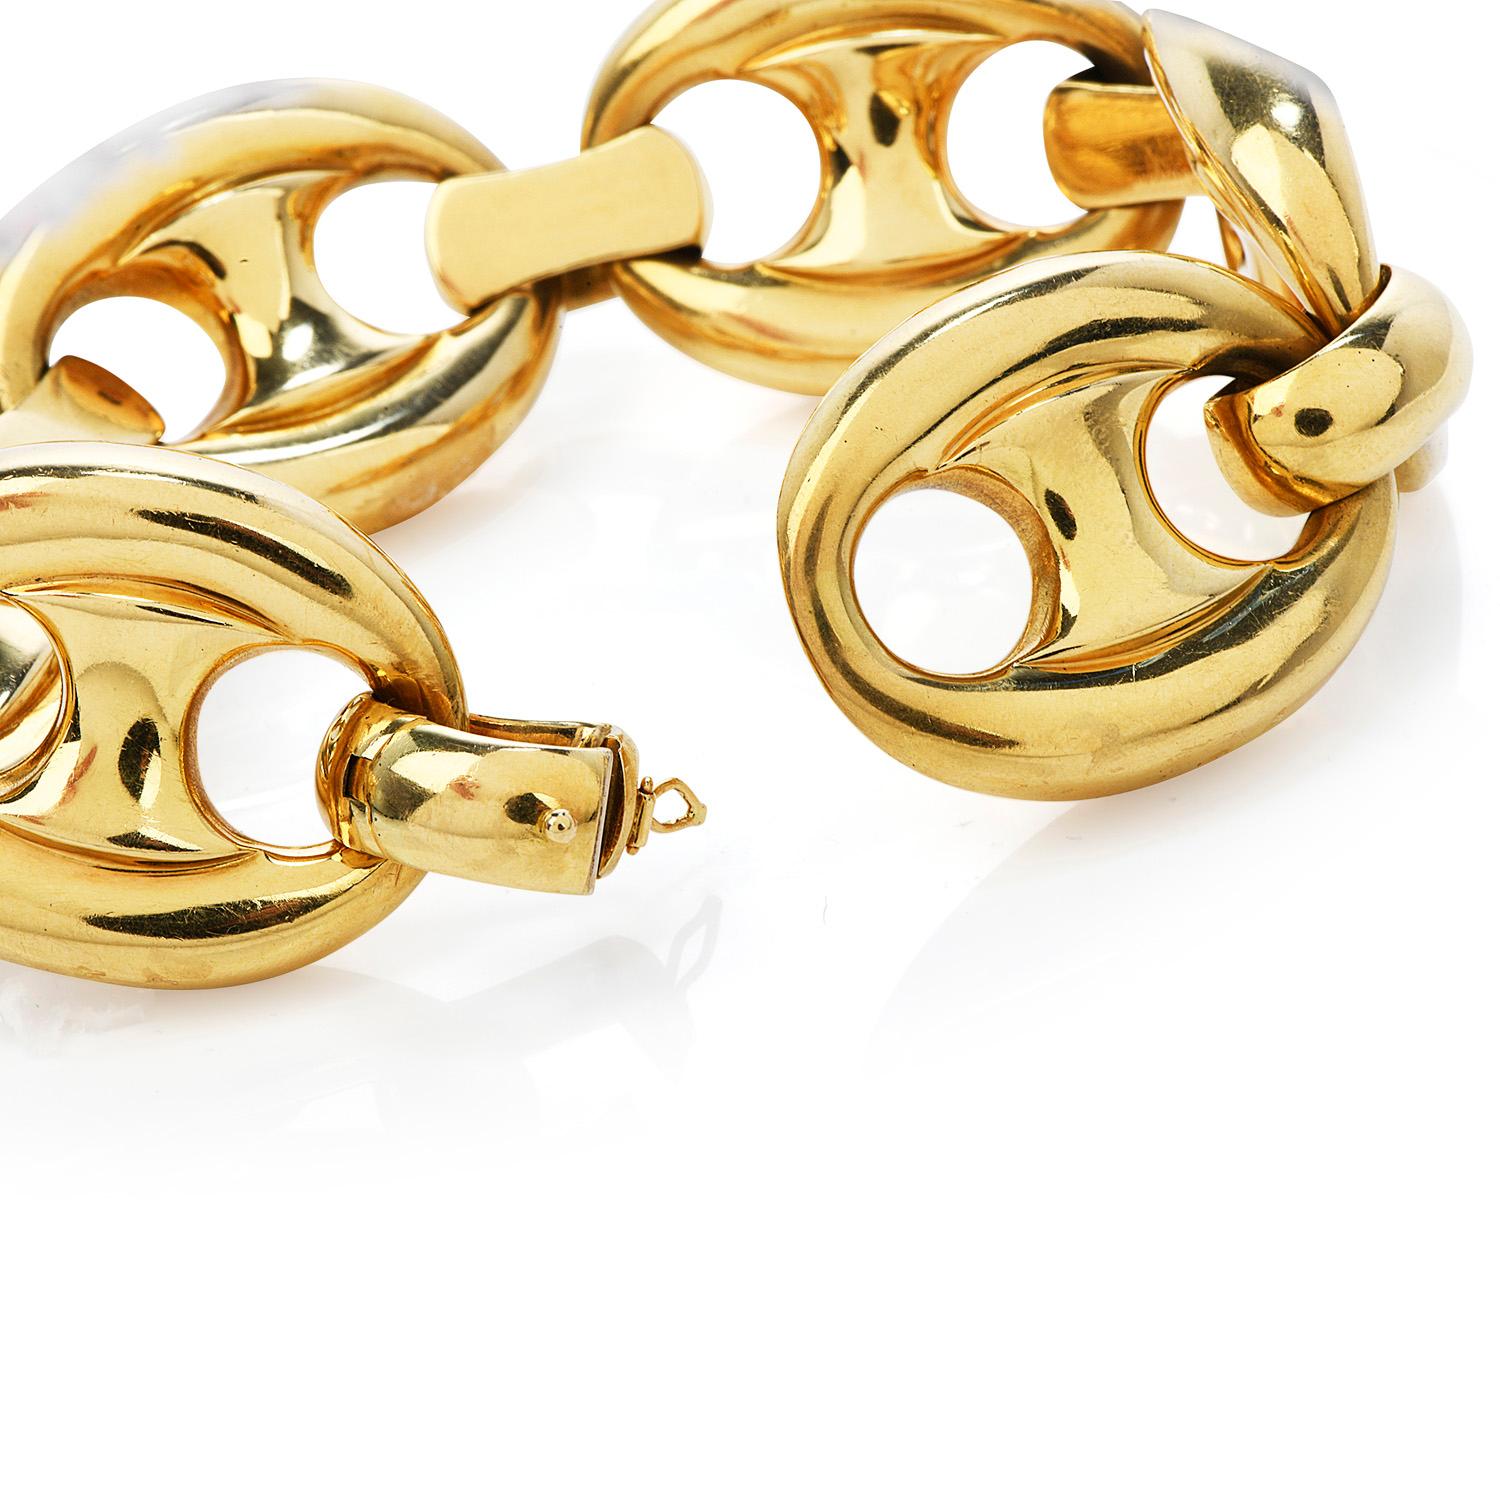 designer gold bracelet